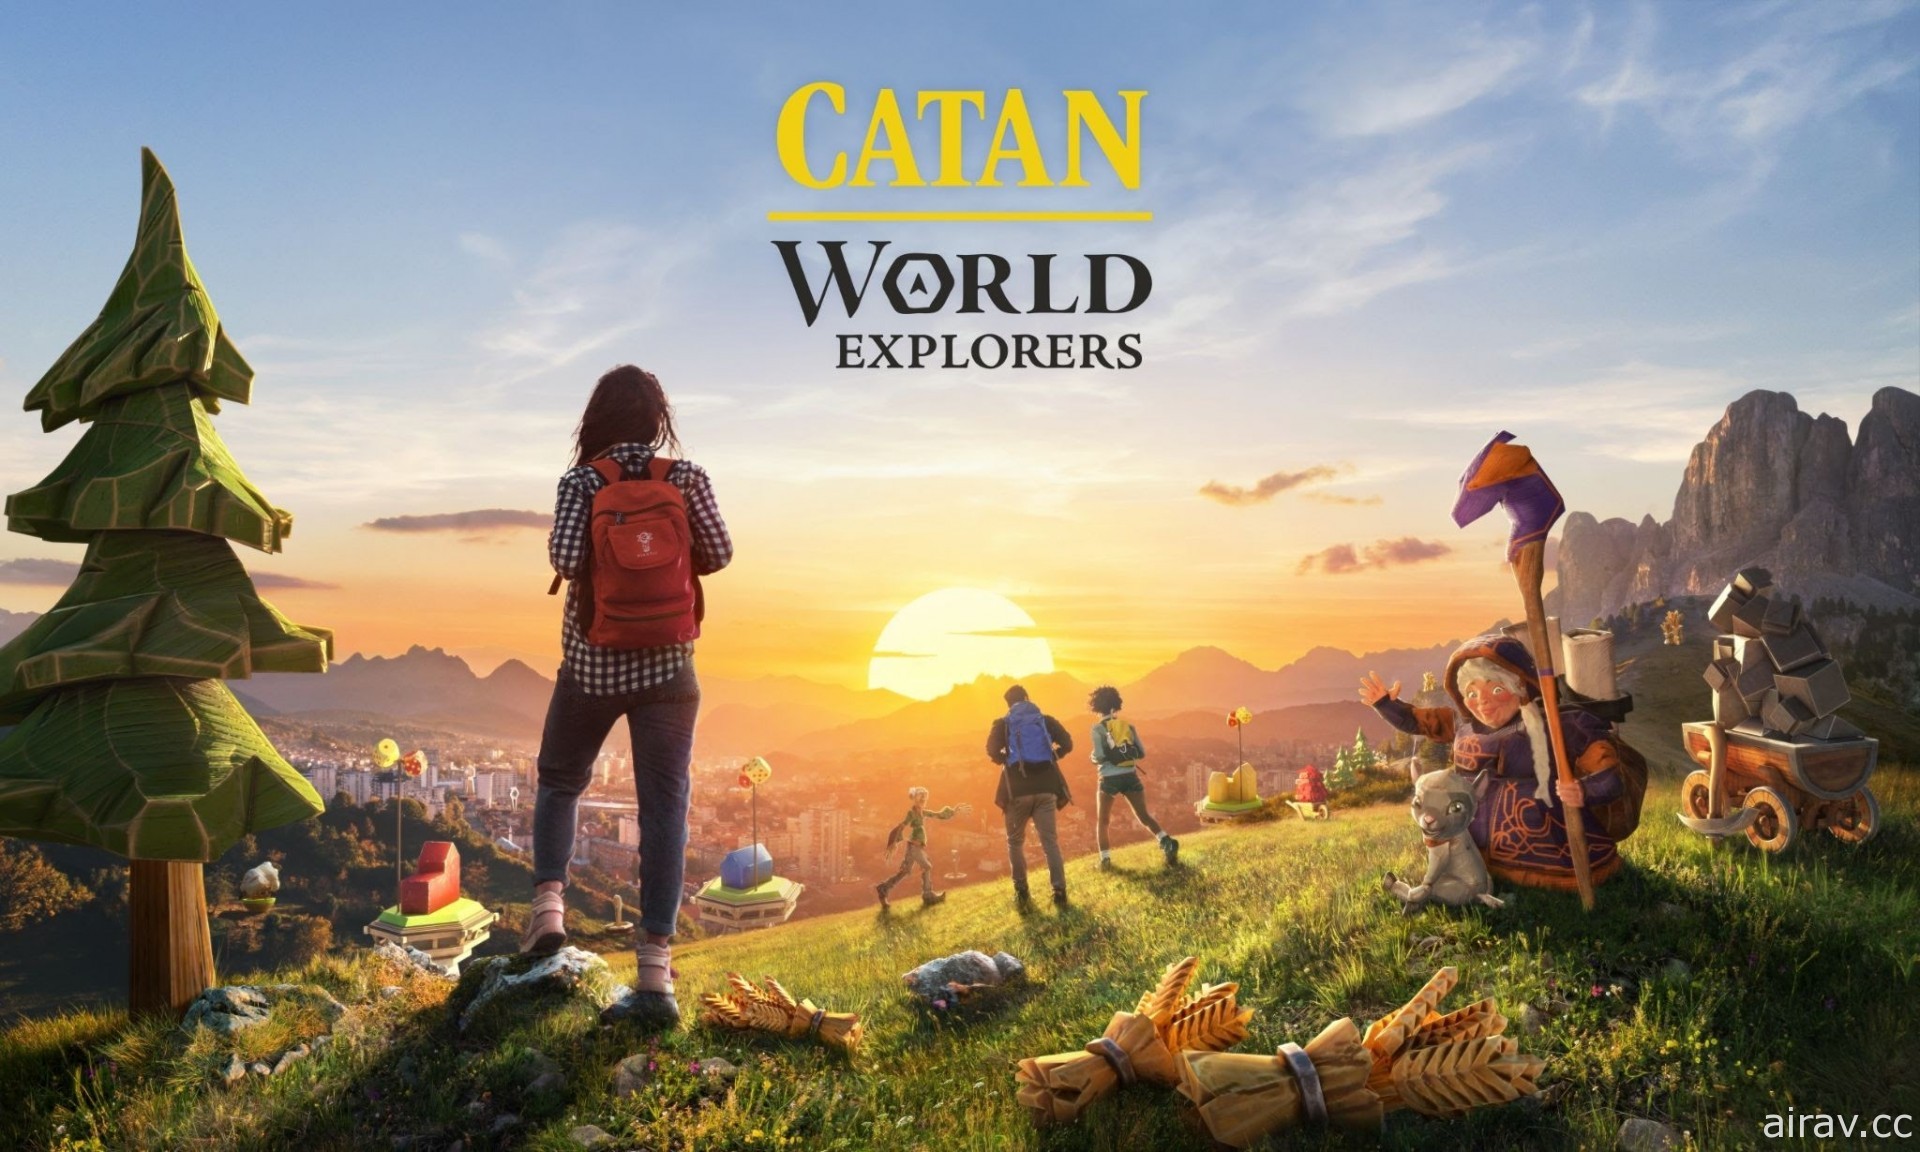 《卡坦：世界探险家》将于 11/18 结束营运 释出游戏 GIF 供玩家在社群上使用